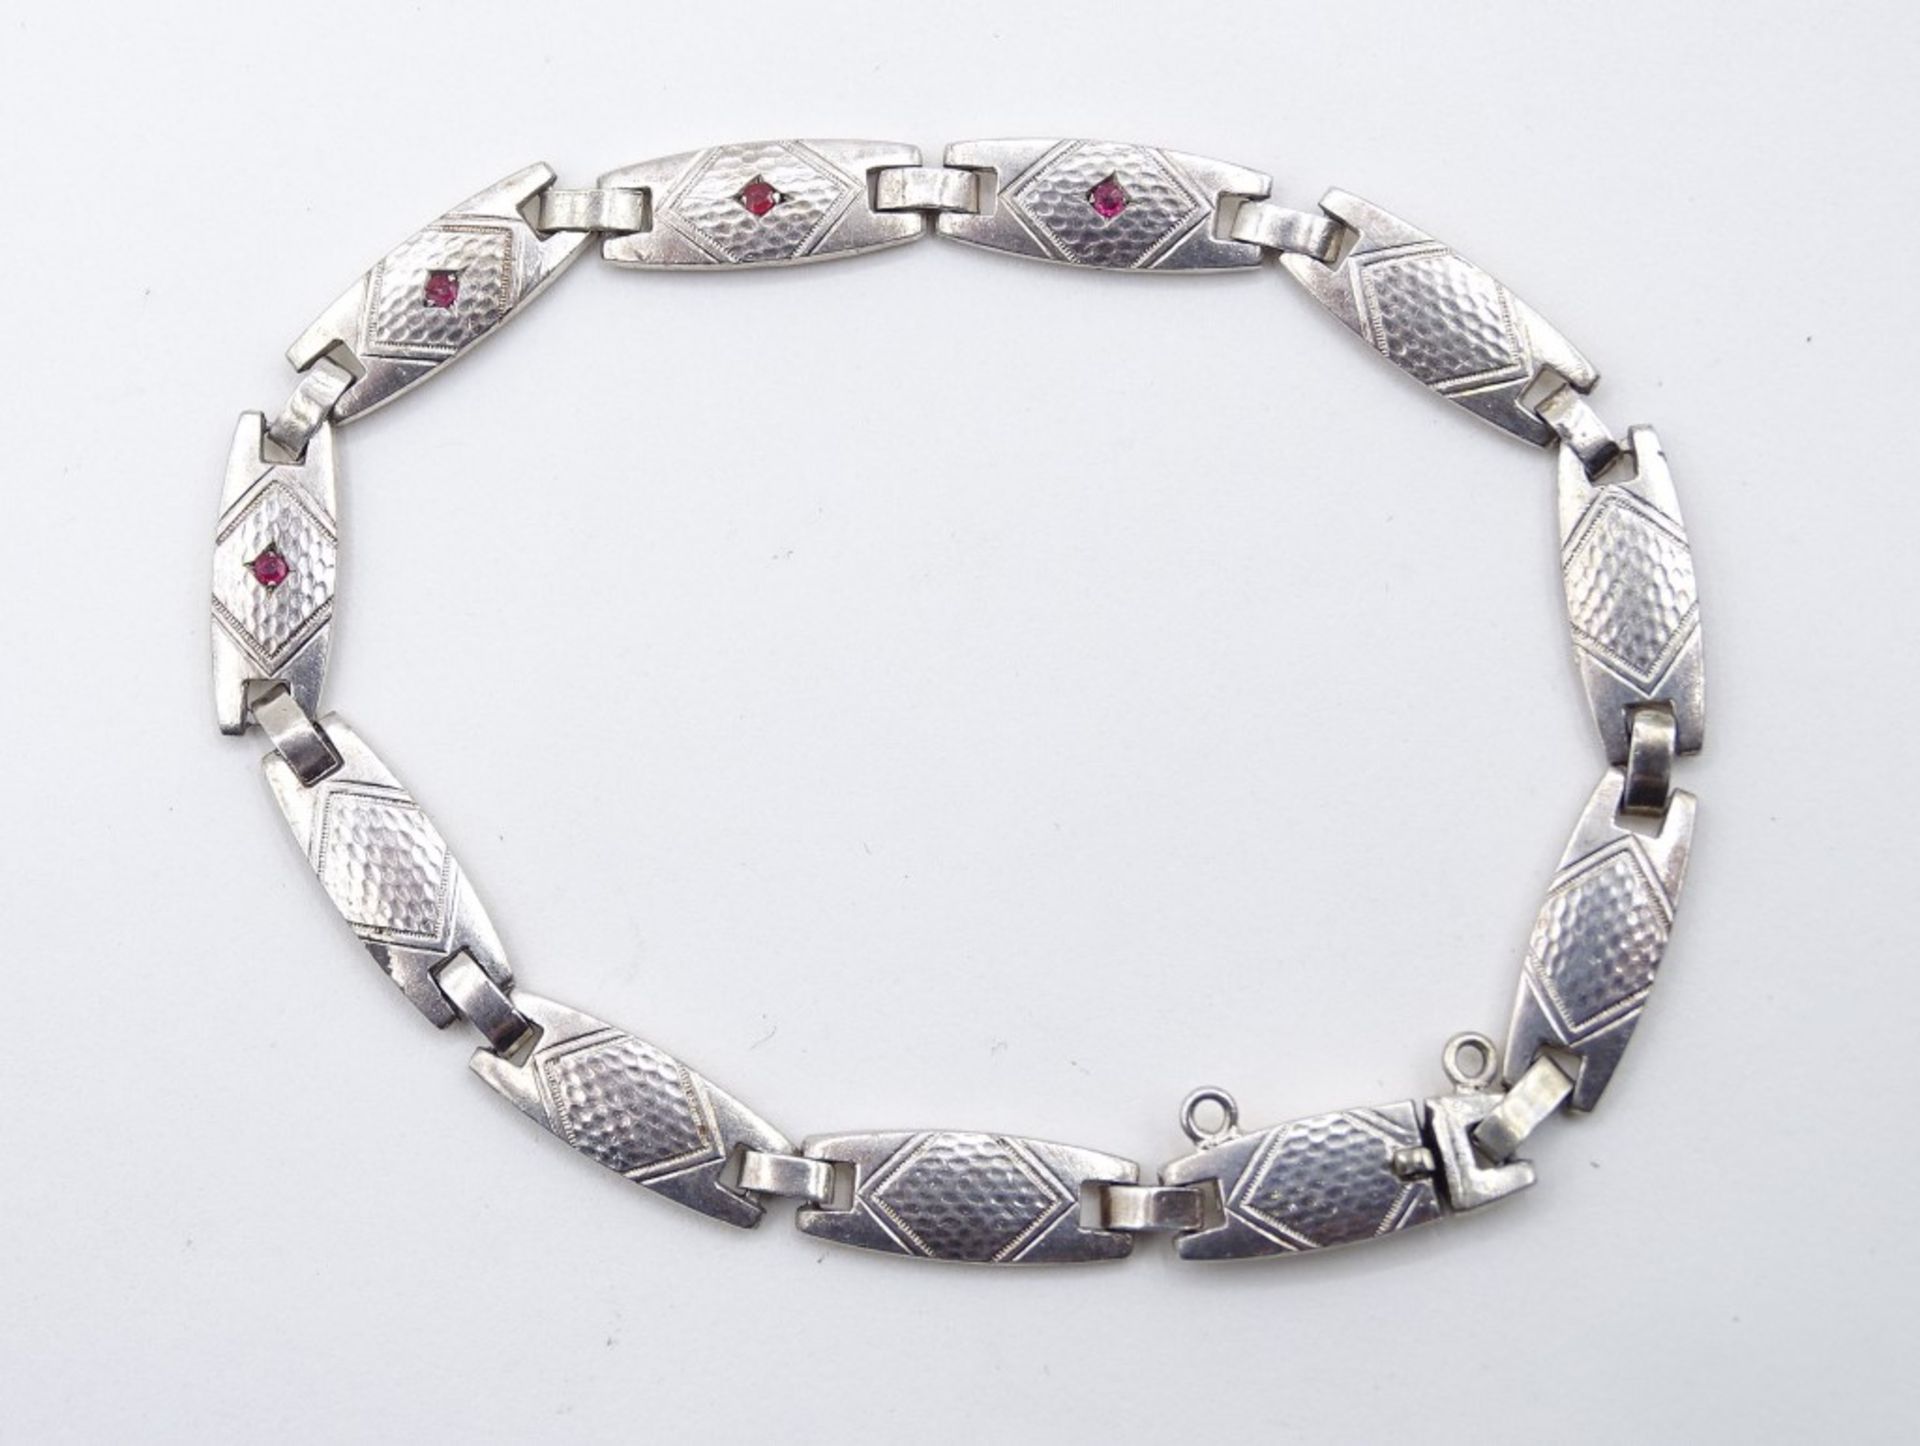 Silberarmband (gepr.) besetzt mit 4 kleinen roten Steinen, L. 19 cm, 10 gr., mit Altersspuren, rein - Bild 2 aus 4